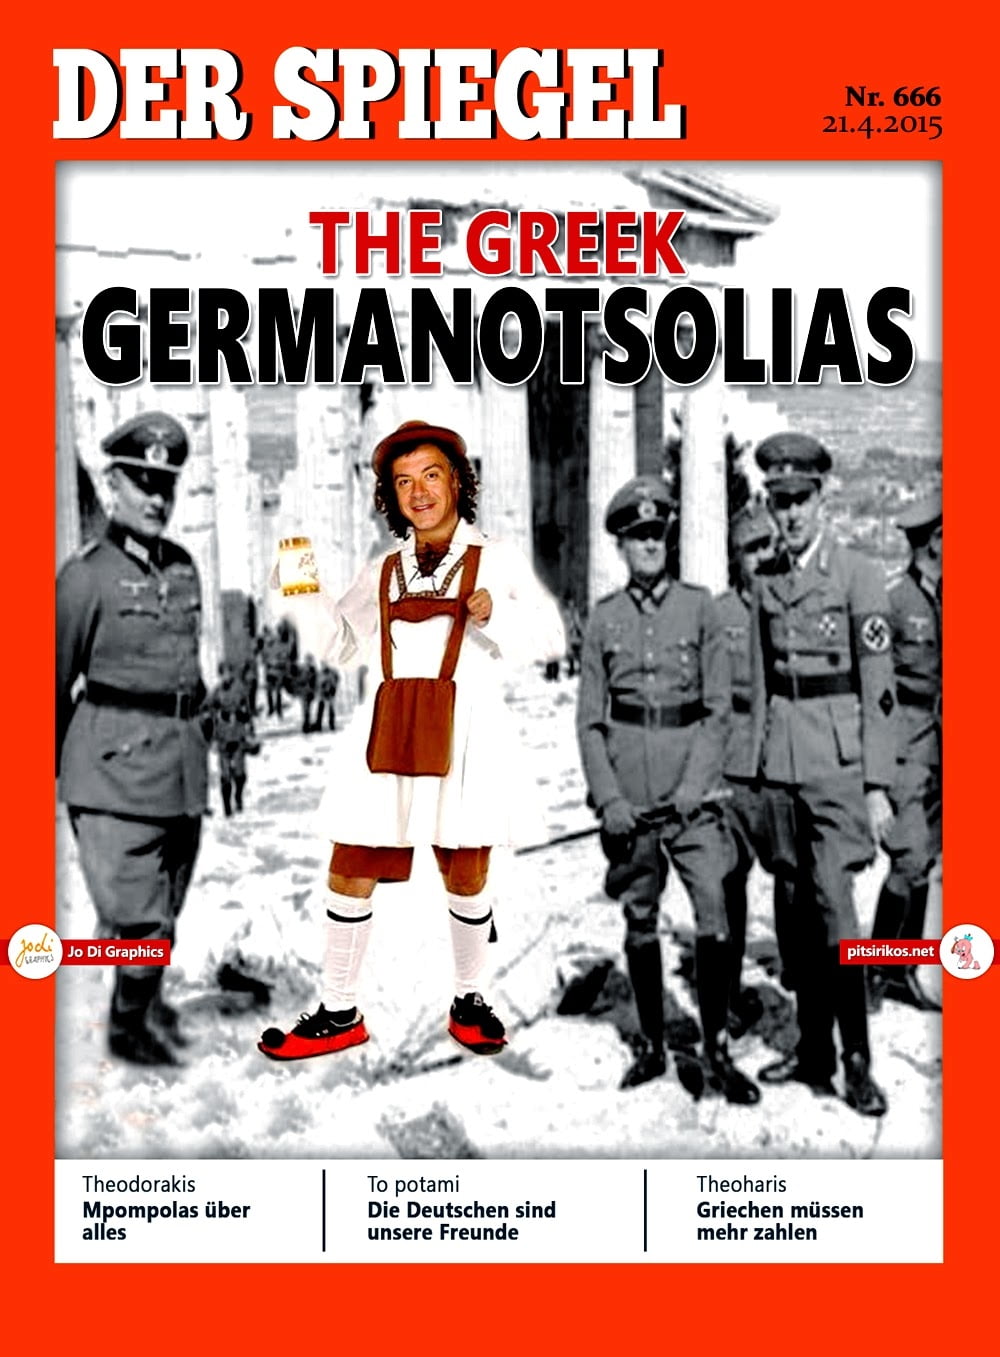 Διαφήμιση για την Ελλάδα το εξώφυλλο του Spiegel